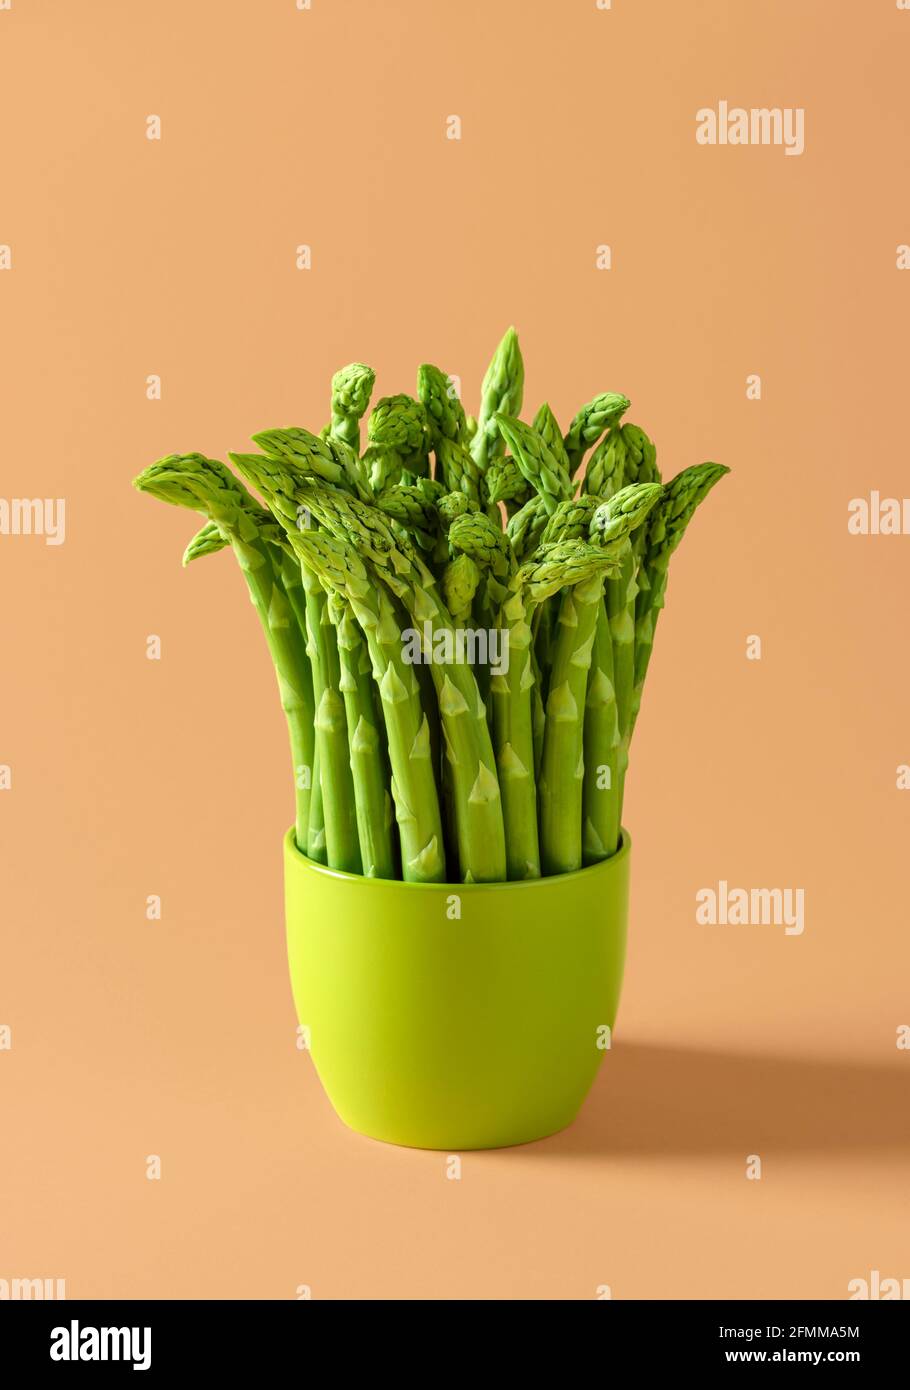 Bouquet d'asperges crues dans un pot en céramique verte sur fond beige. Asperges vertes fraîches sur fond coloré. Banque D'Images